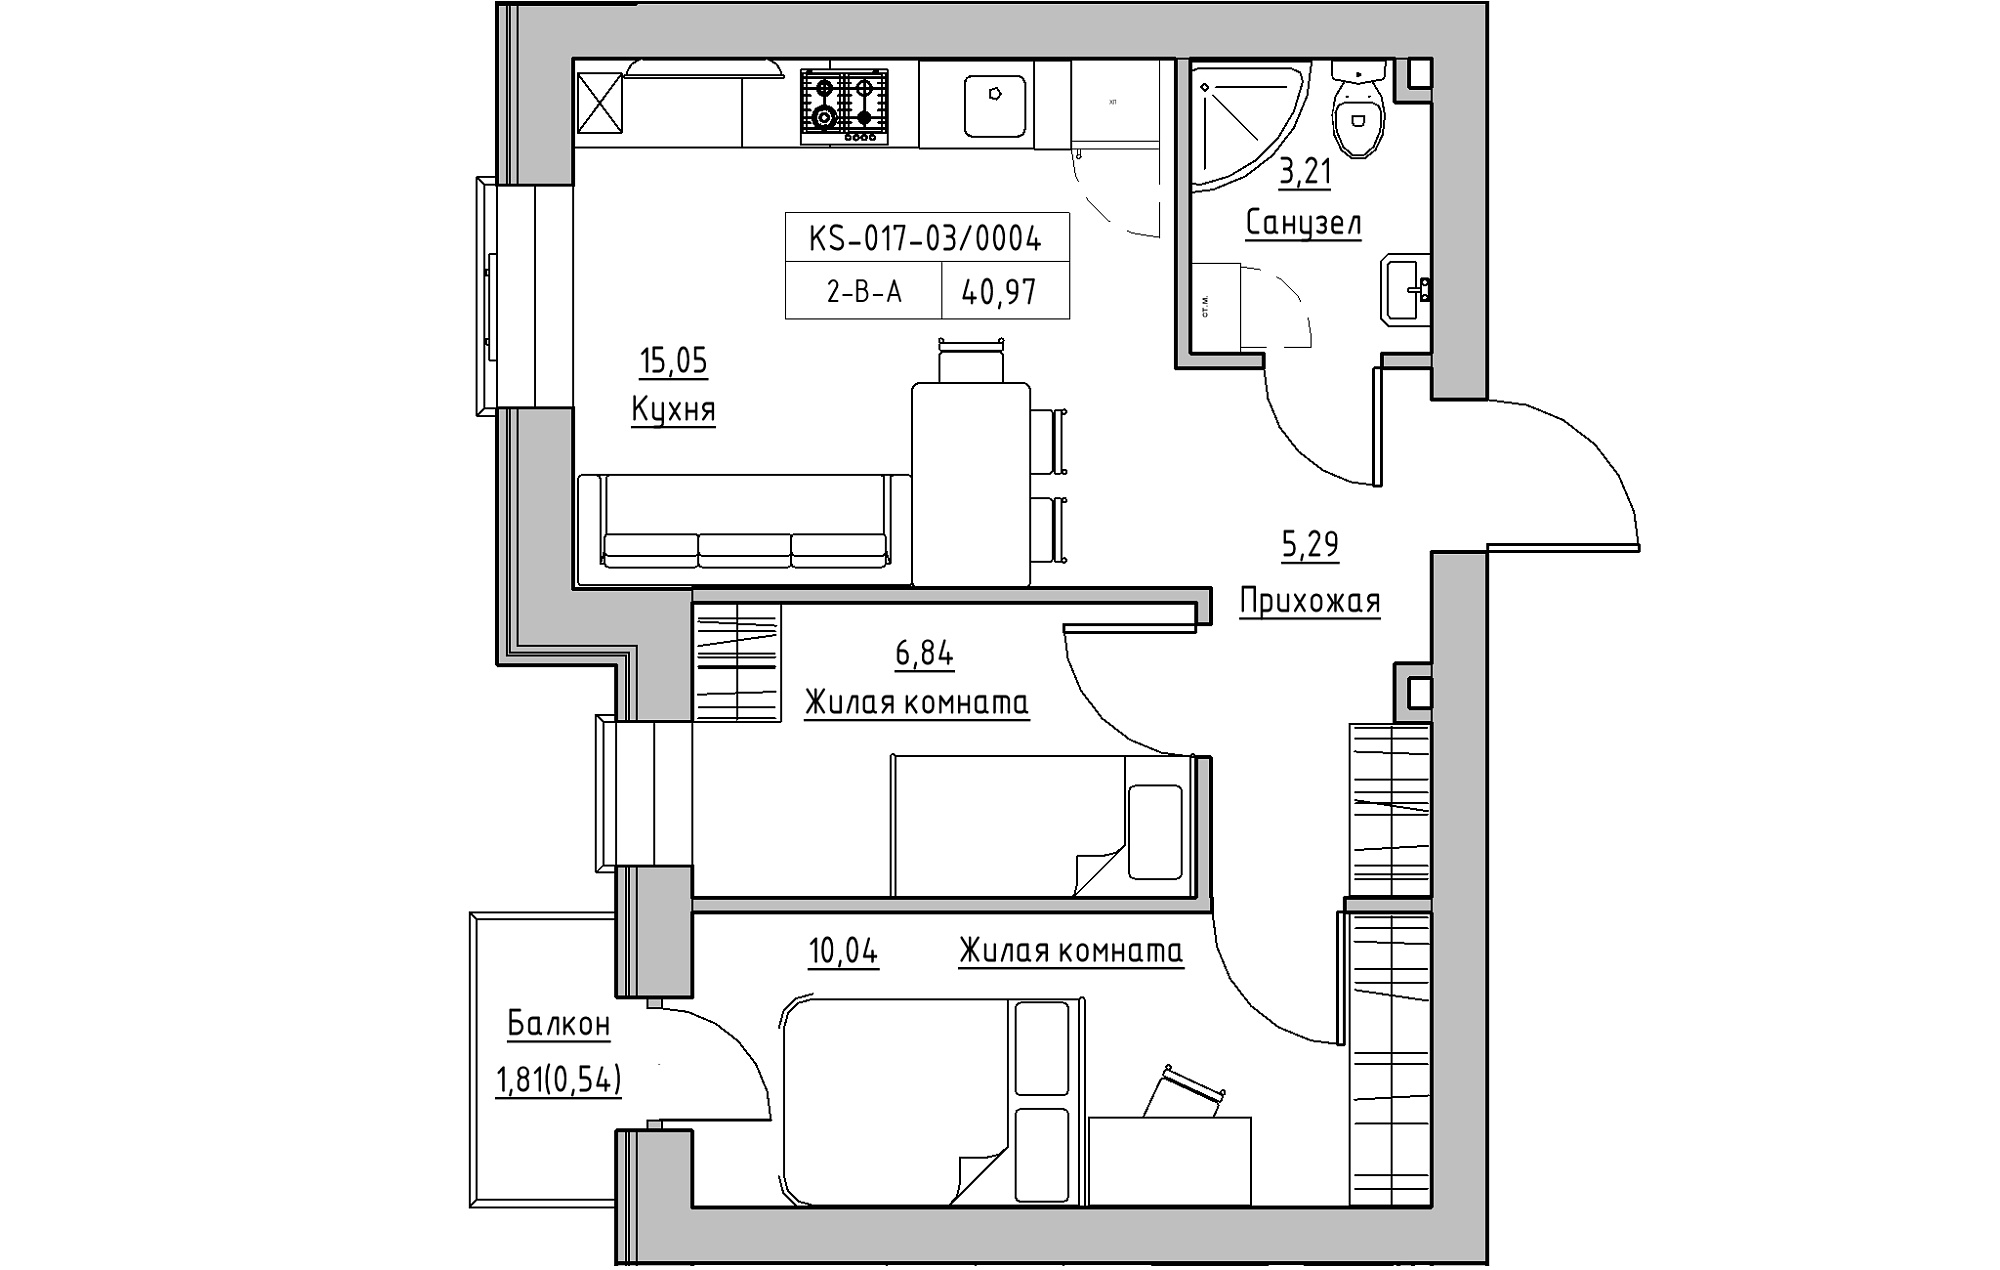 Планировка 2-к квартира площей 40.97м2, KS-017-03/0004.